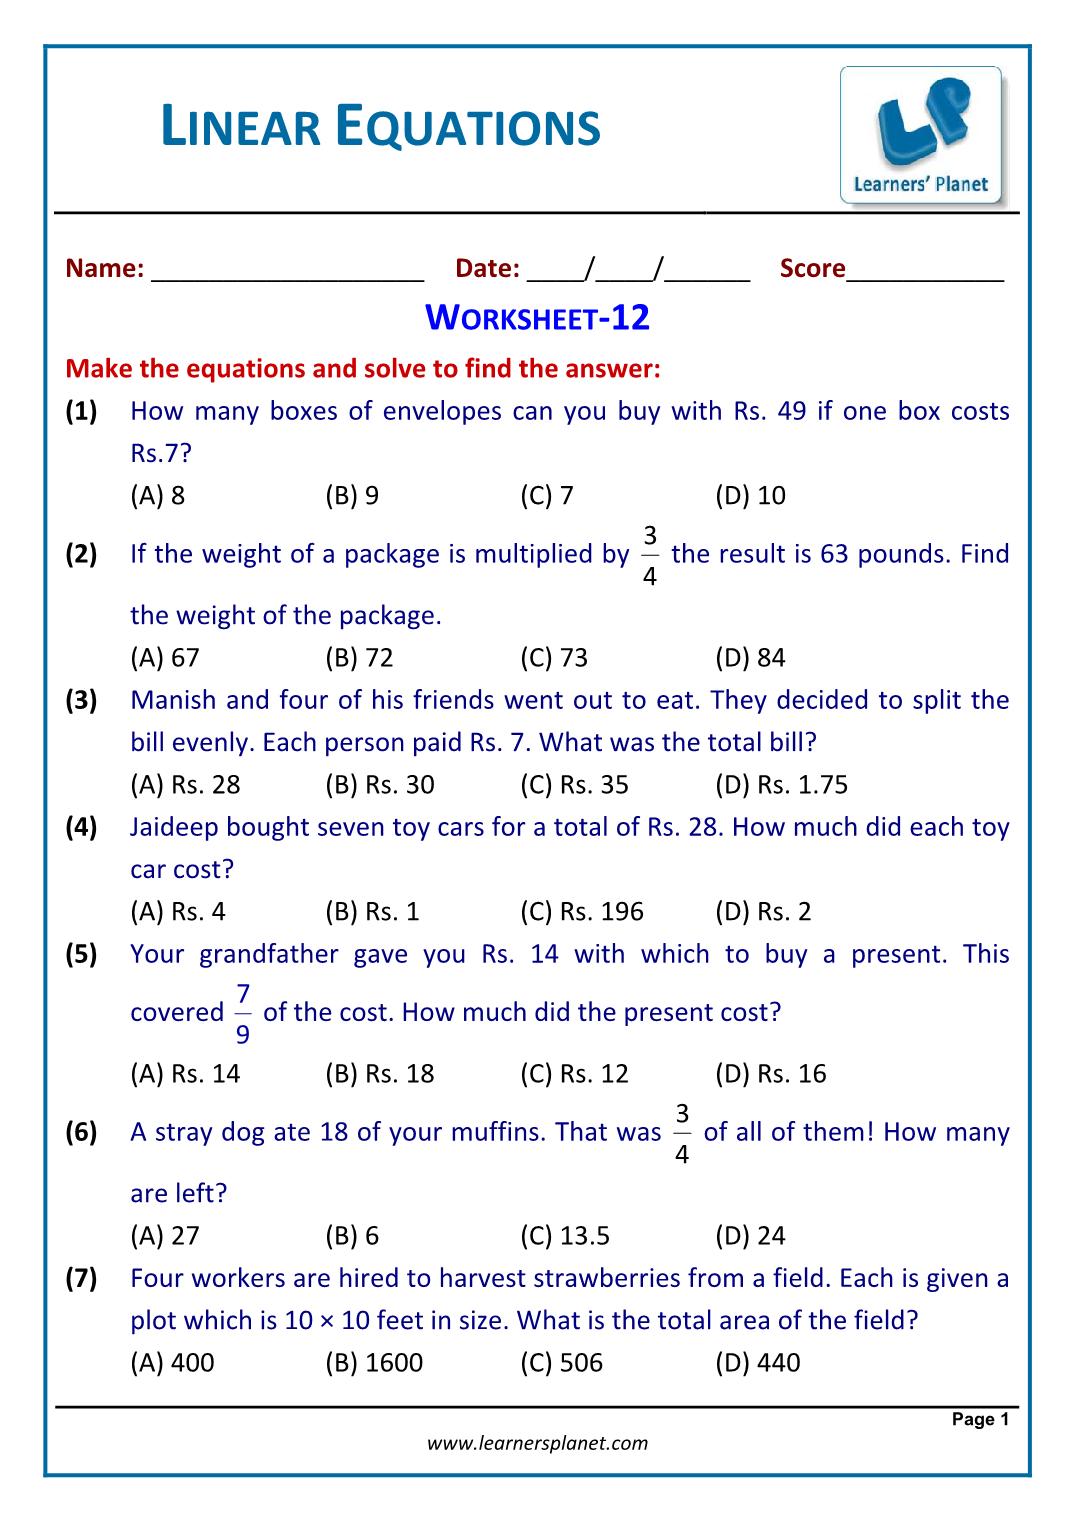 Solve linear equations word problems worksheet grade 22 Pertaining To Solving Equations Word Problems Worksheet